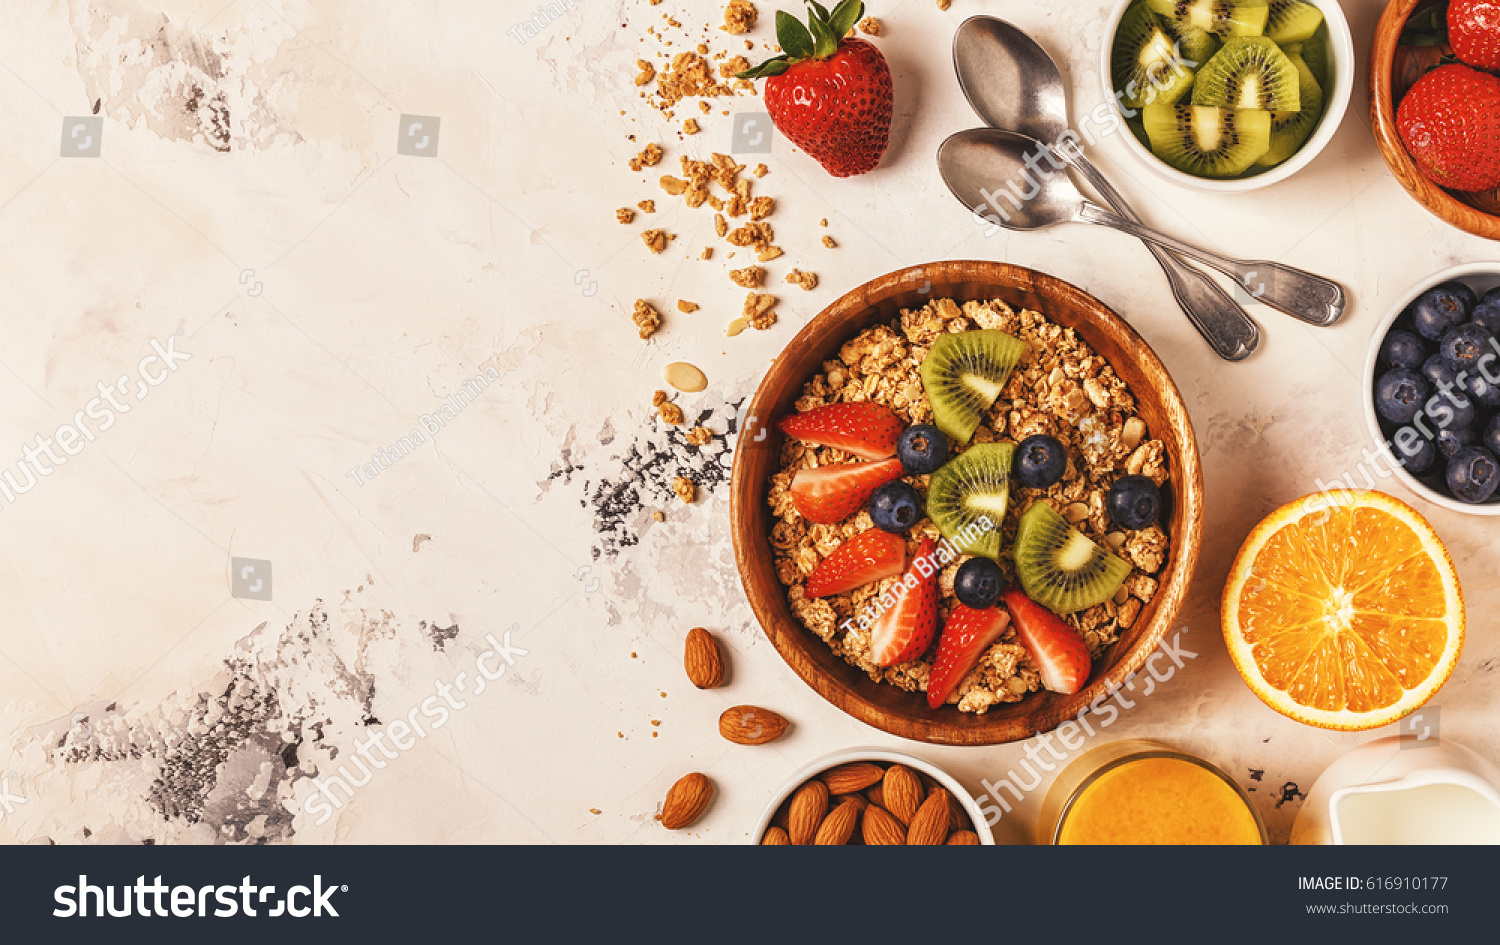 Healthy breakfast - bowl of muesli, berries and fruit, nuts, orange juice, milk, top view. #616910177